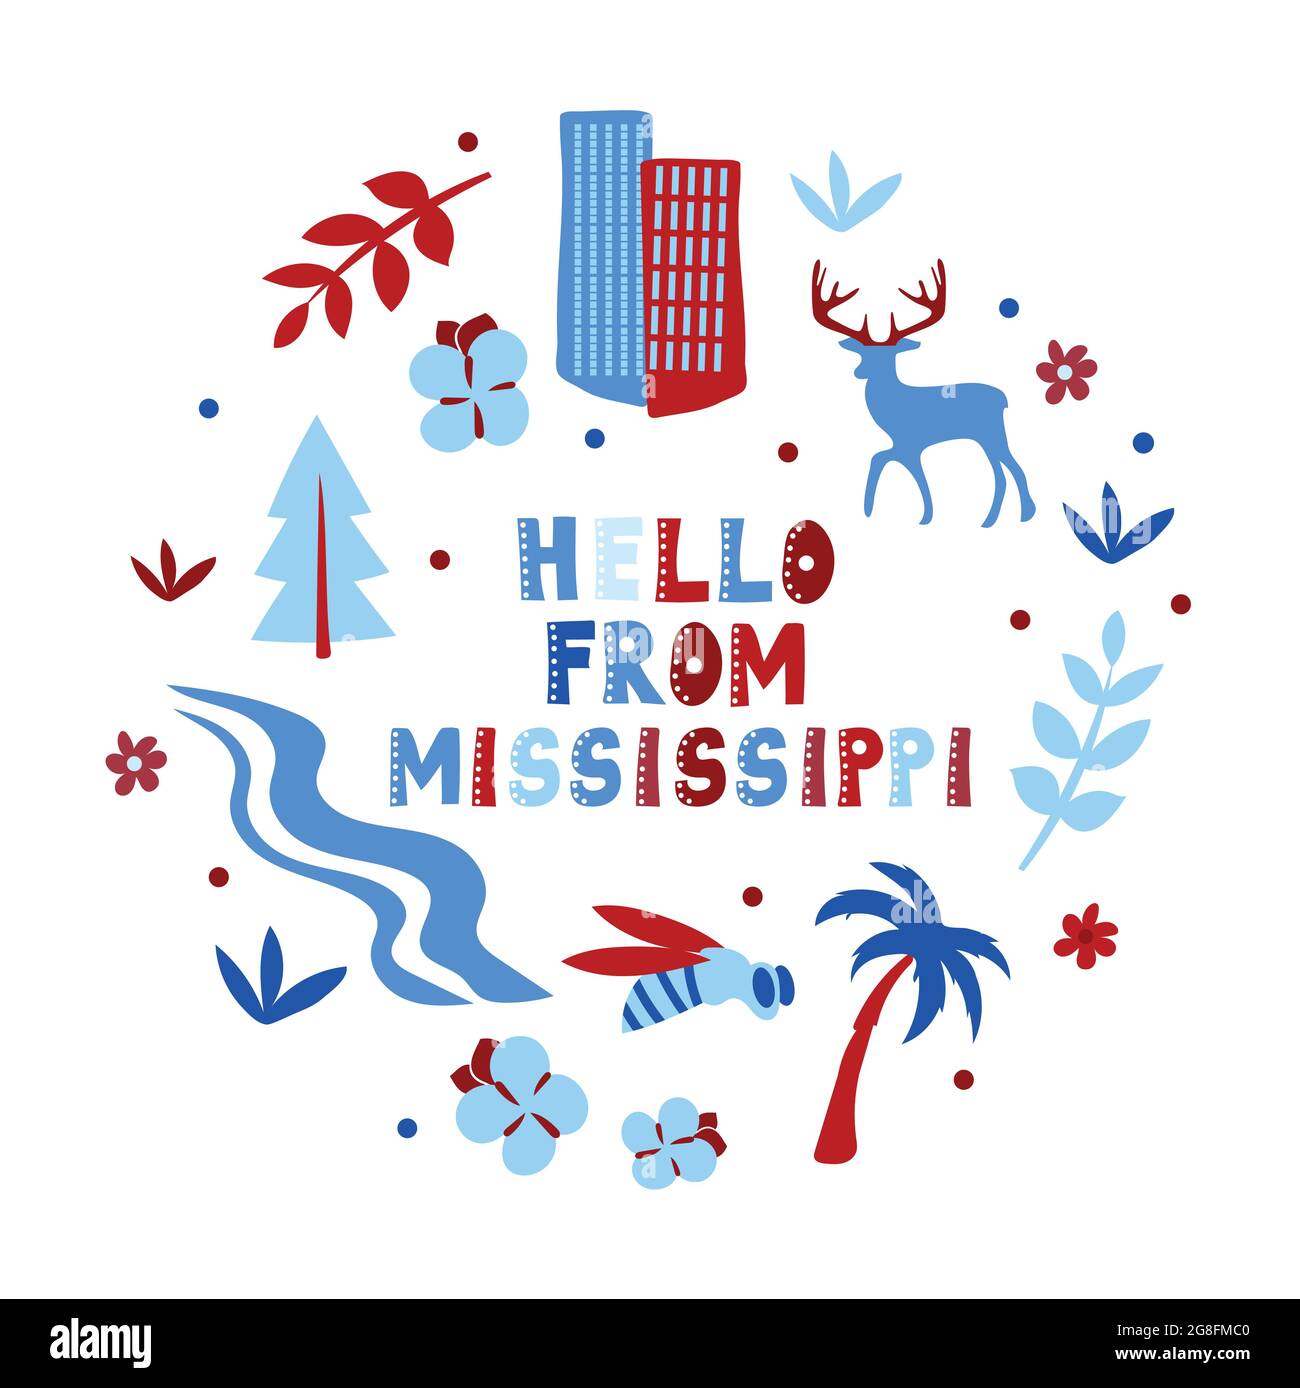 Illustrierte Karte des Staates Mississippi in den Vereinigten Staaten mit Staatssymbolen. Hallo von - Card. Editierbare Vektordarstellung Stock Vektor